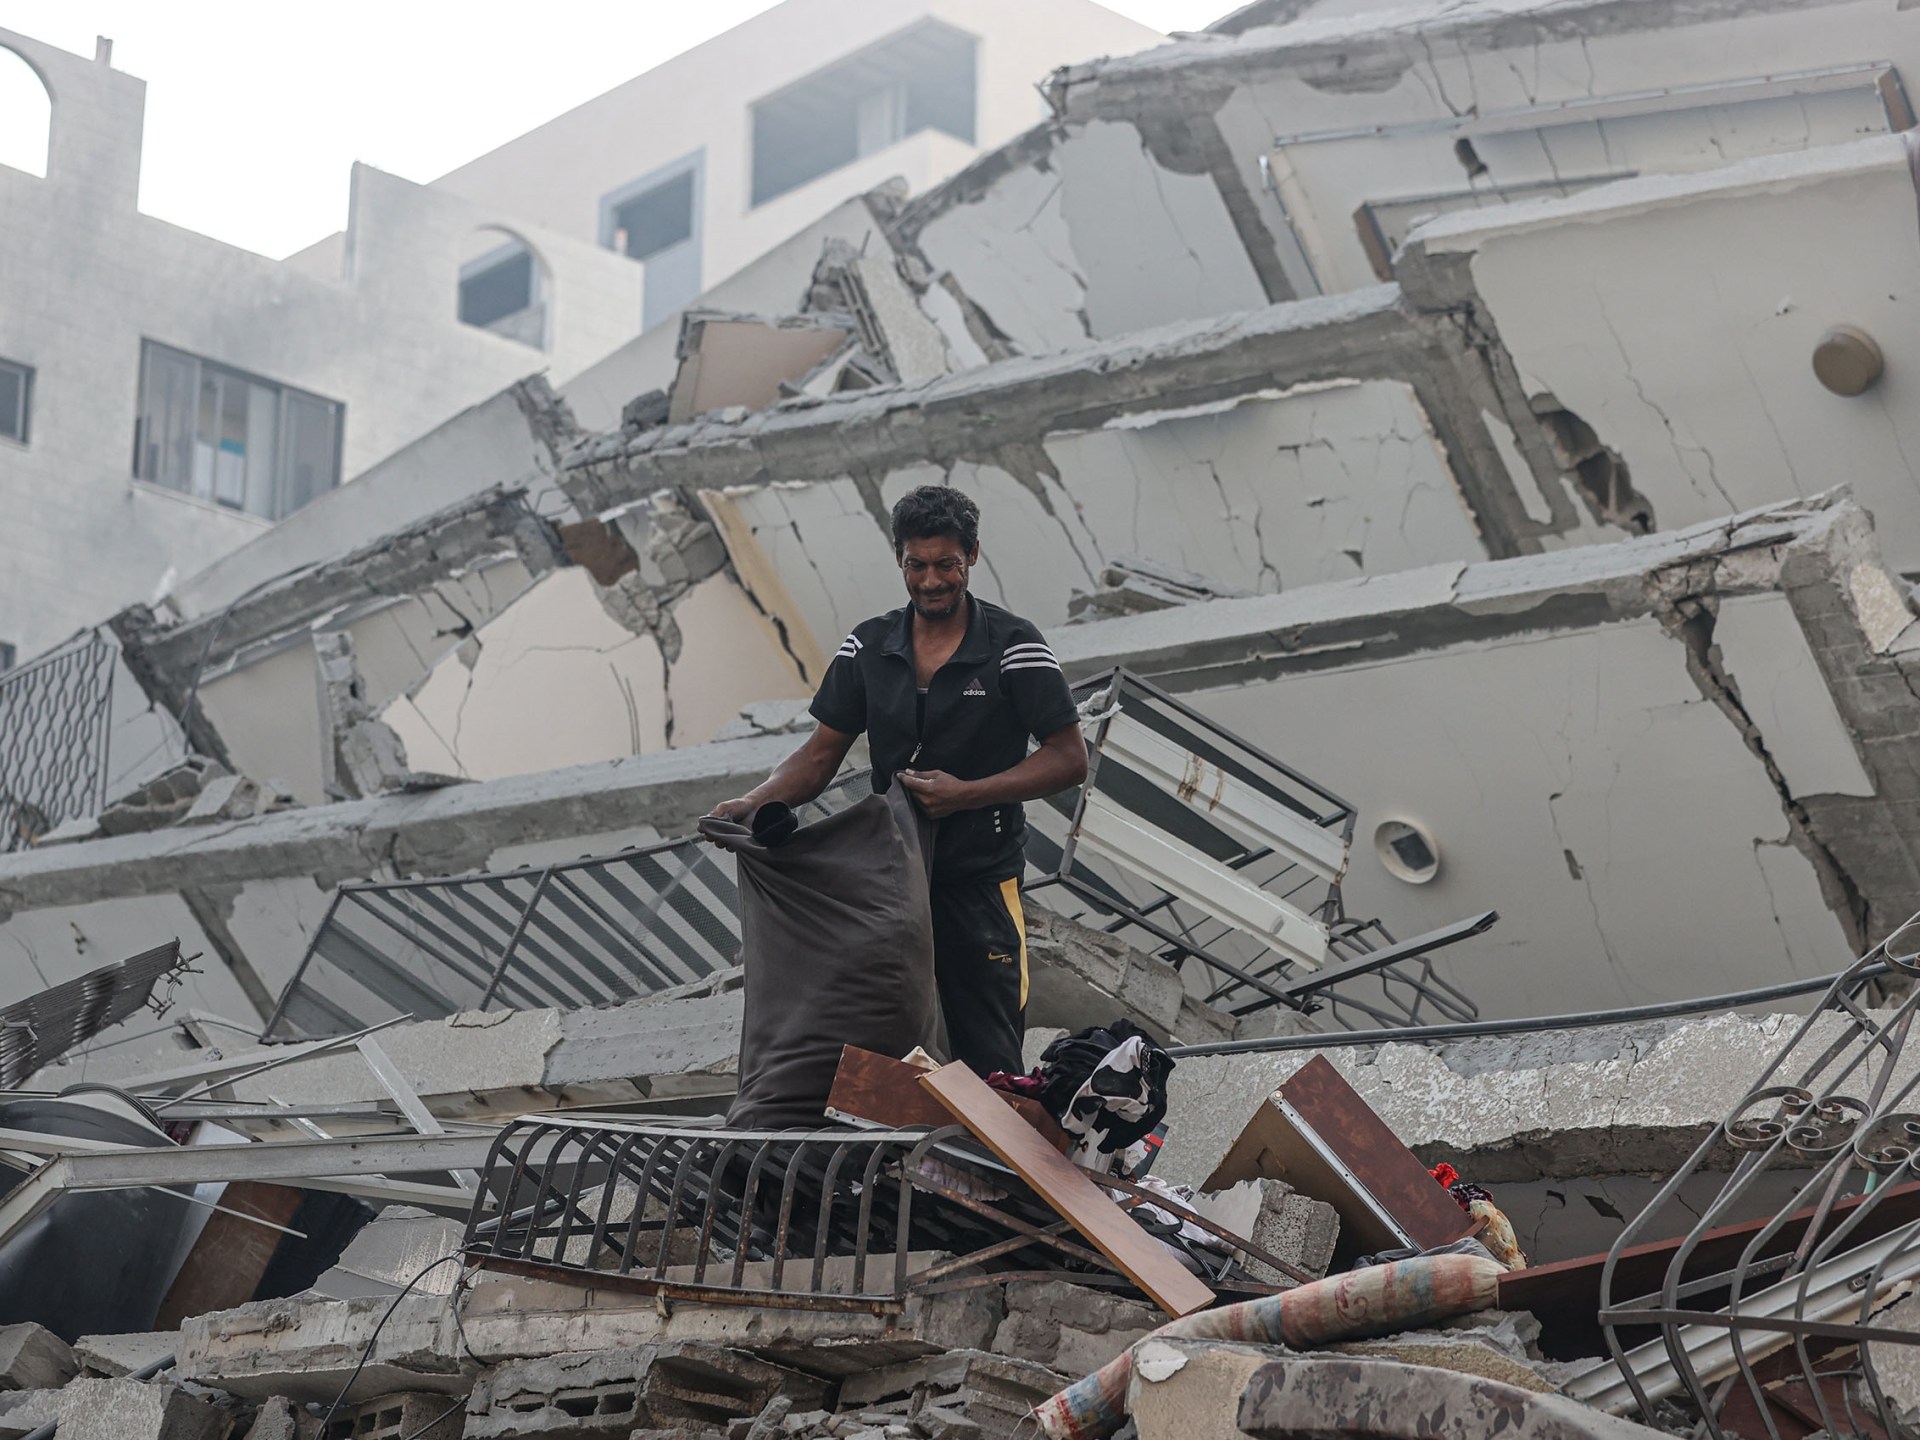 غزة تواجه قصفا إسرائيليا انتقاميا | أخبار بالصور – البوكس نيوز